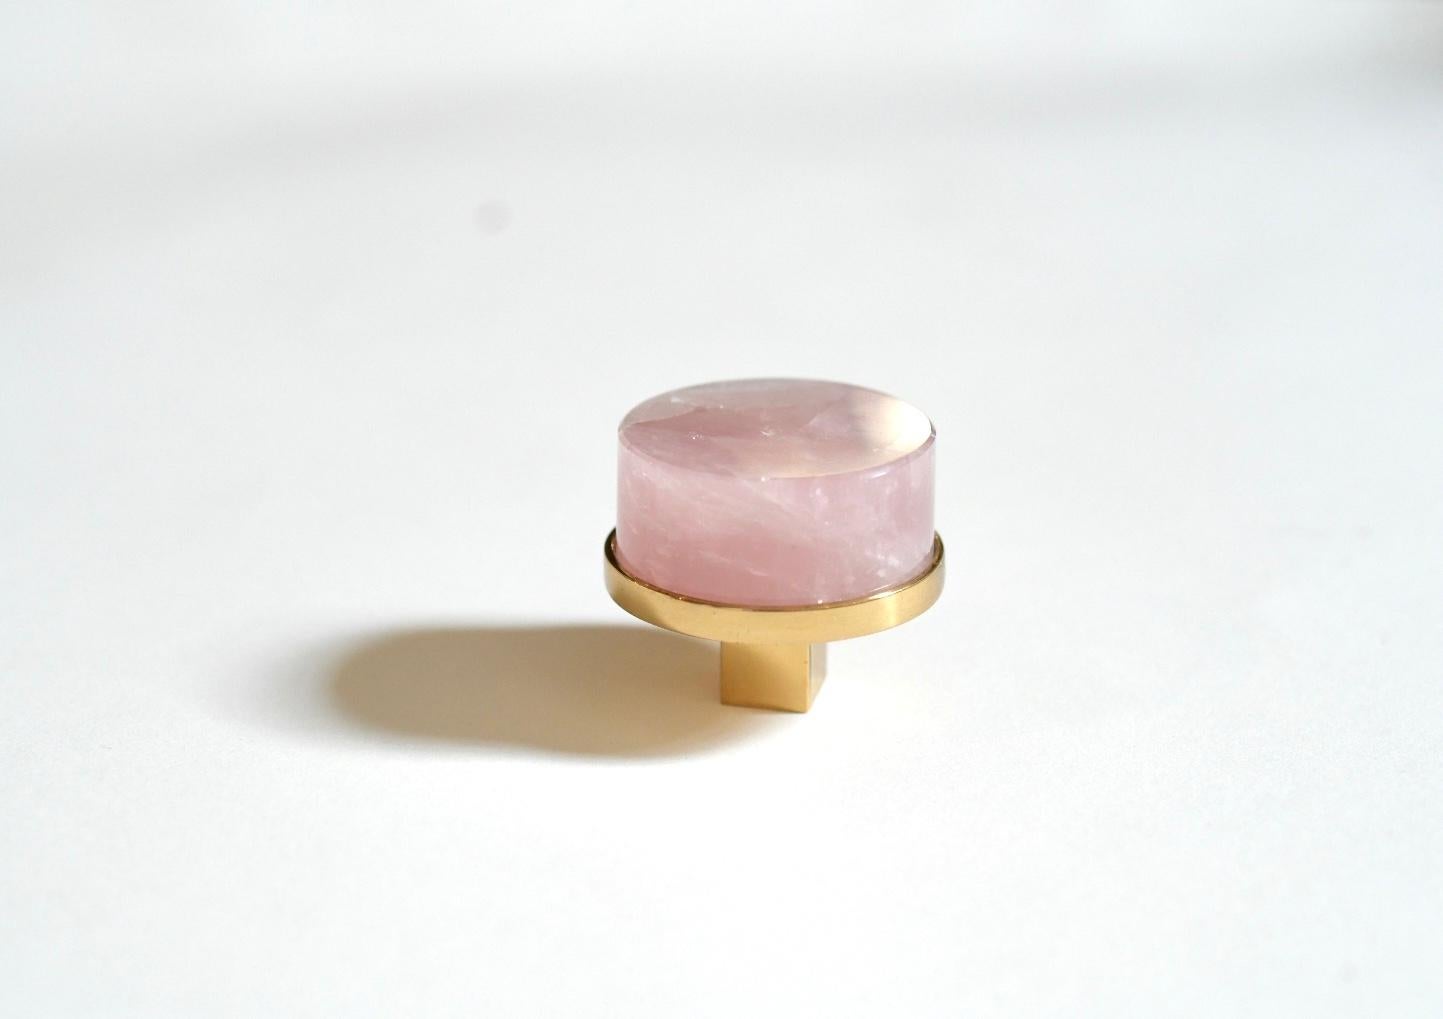 Kreisförmiger, rosafarbener Bergkristallknopf mit poliertem Messingsockel. Erstellt von Phoenix Gallery, NYC.
Kundenspezifische Größe und Ausführung auf Anfrage.